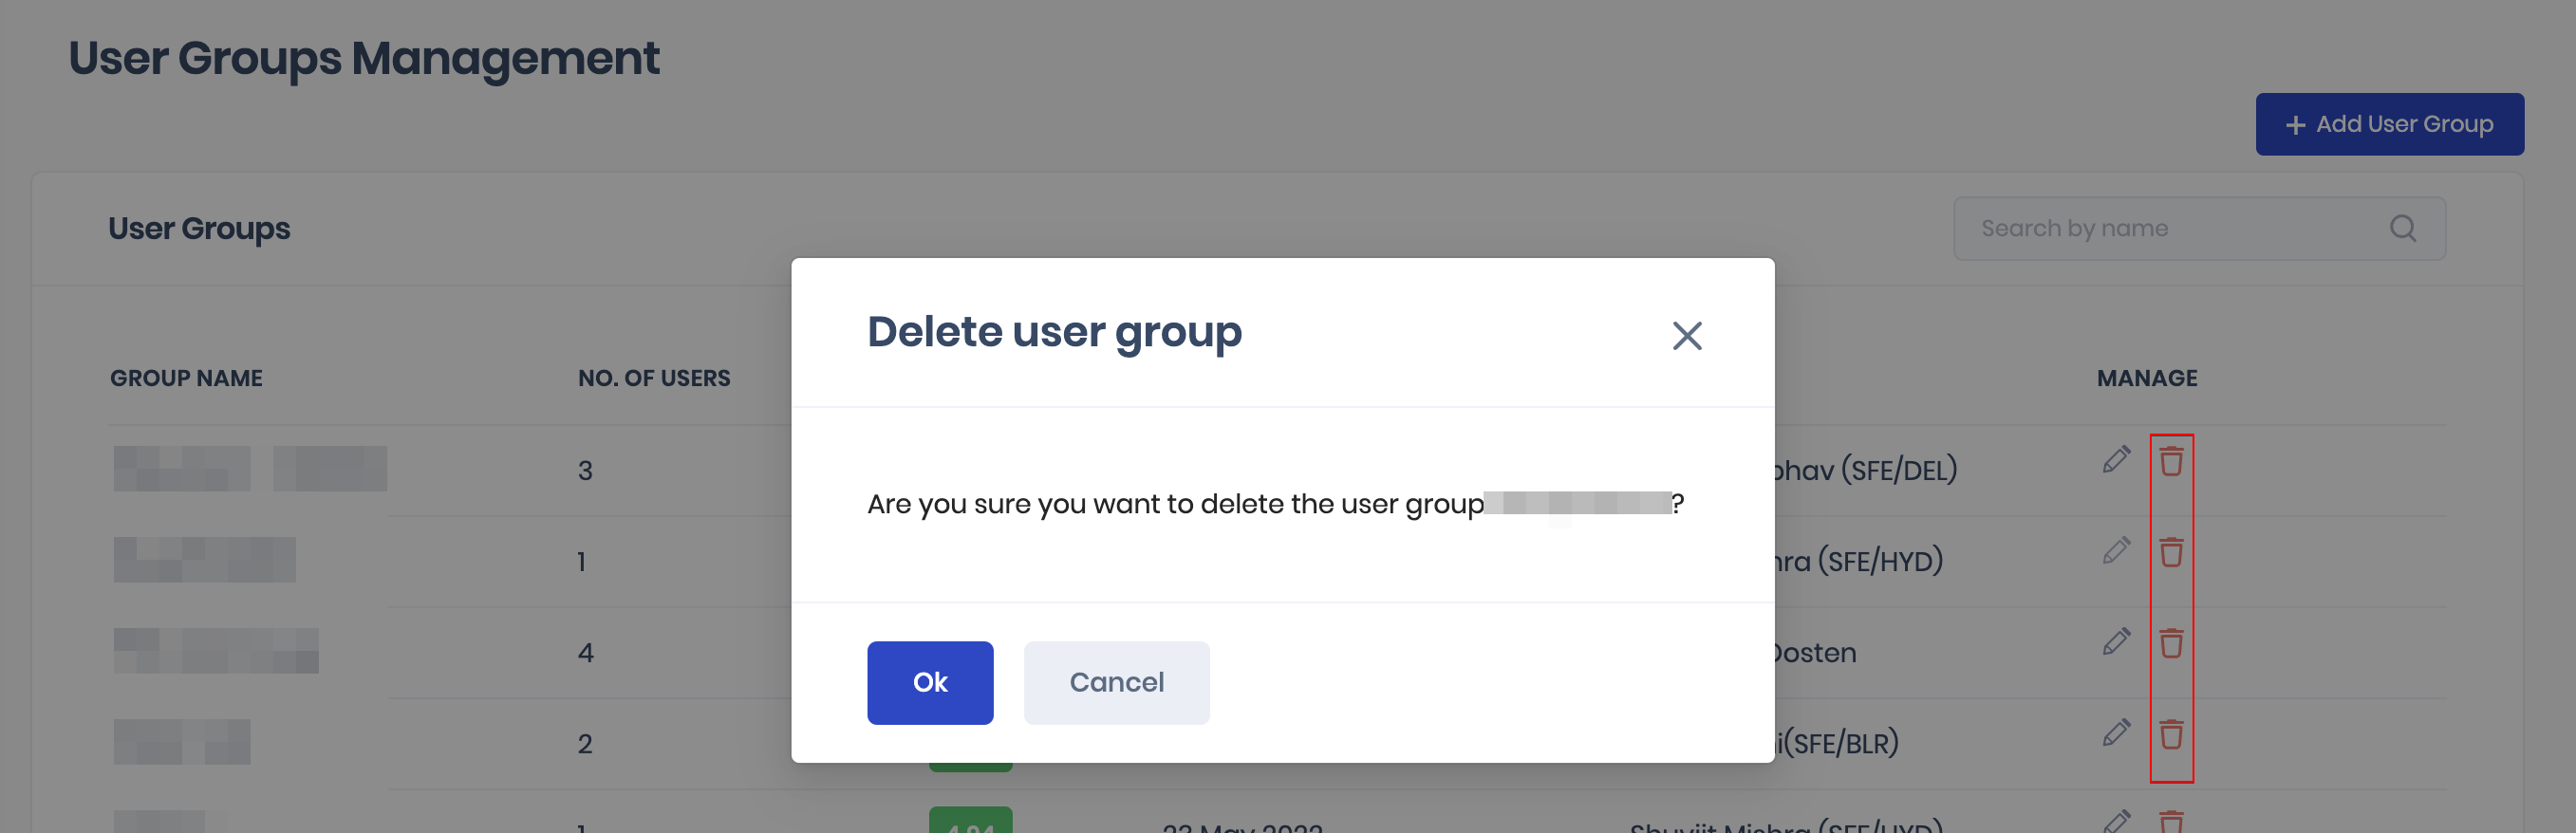 delete user group